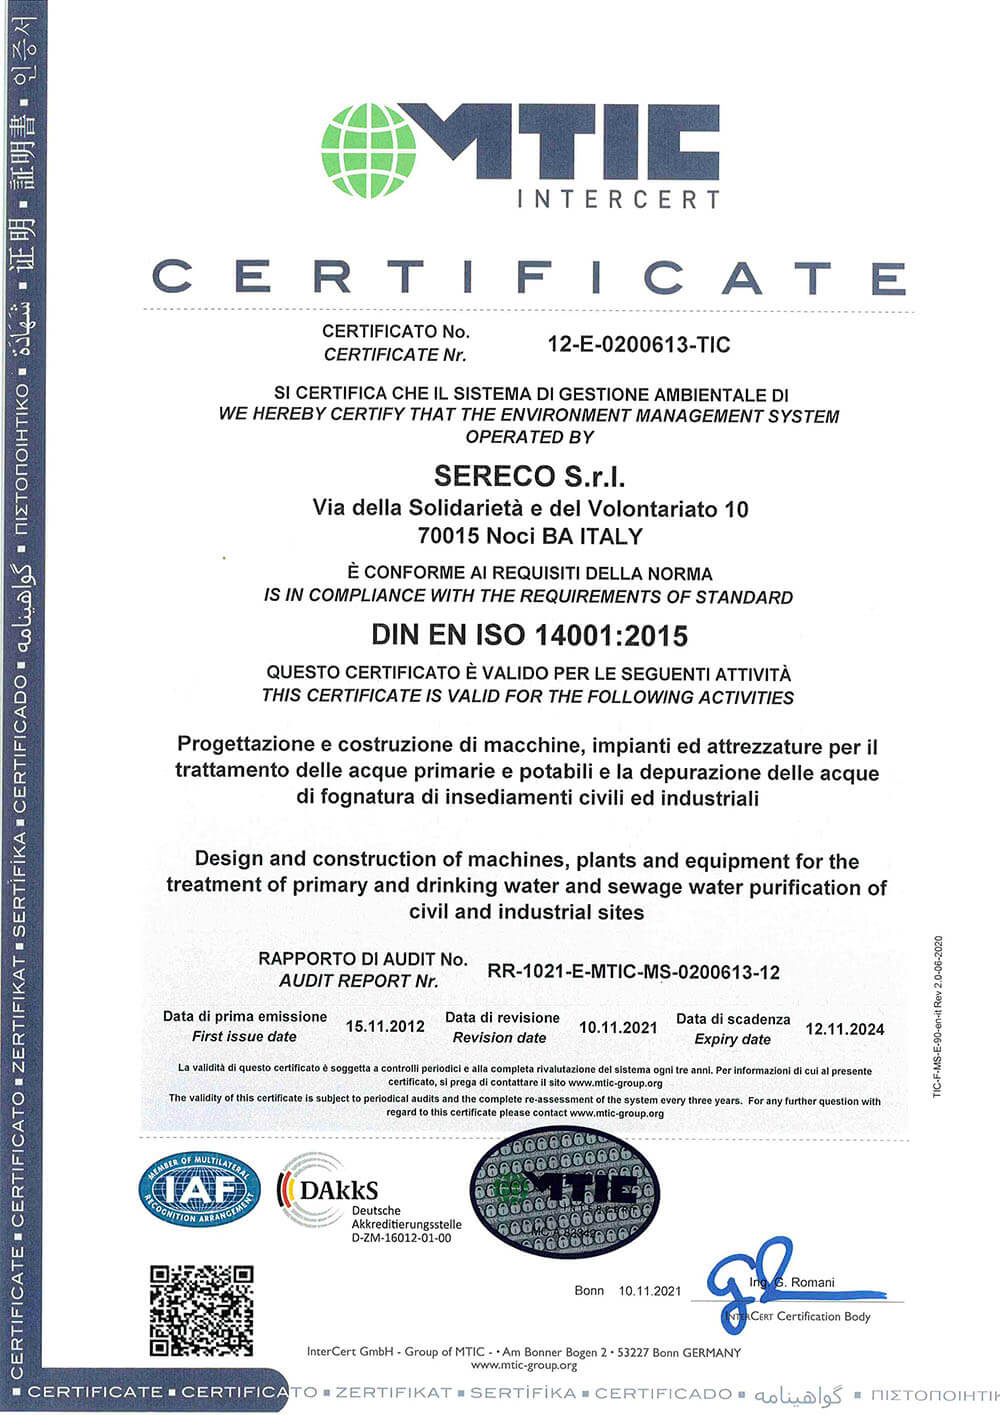 certificazione-ambiente-iso-14001-sereco-puglia